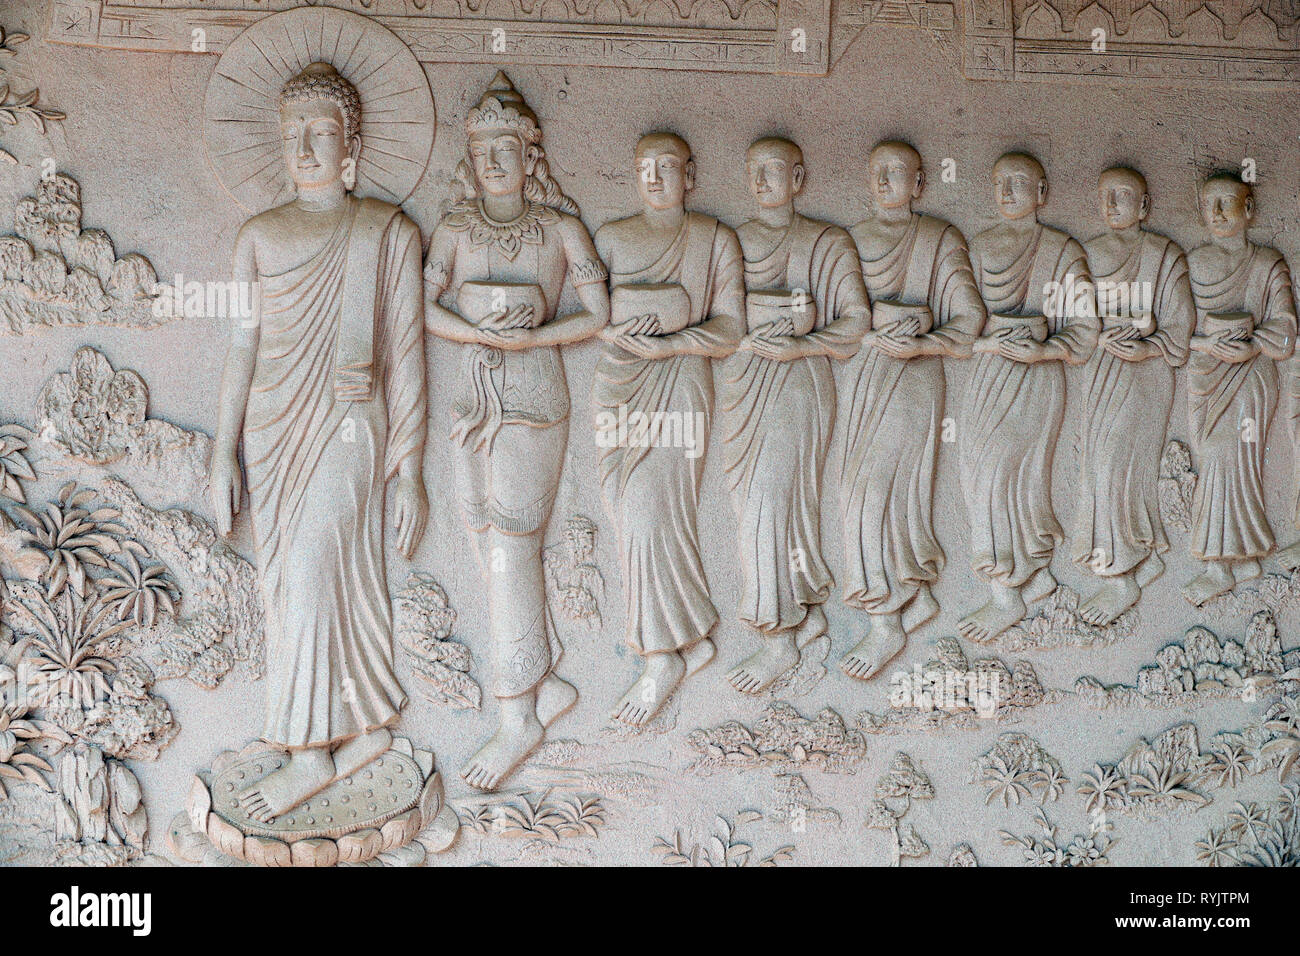 Tinh Xa Ngoc Tin temple bouddhiste. Le bouddha et les moines bouddhistes. Dalat. Le Vietnam. Banque D'Images